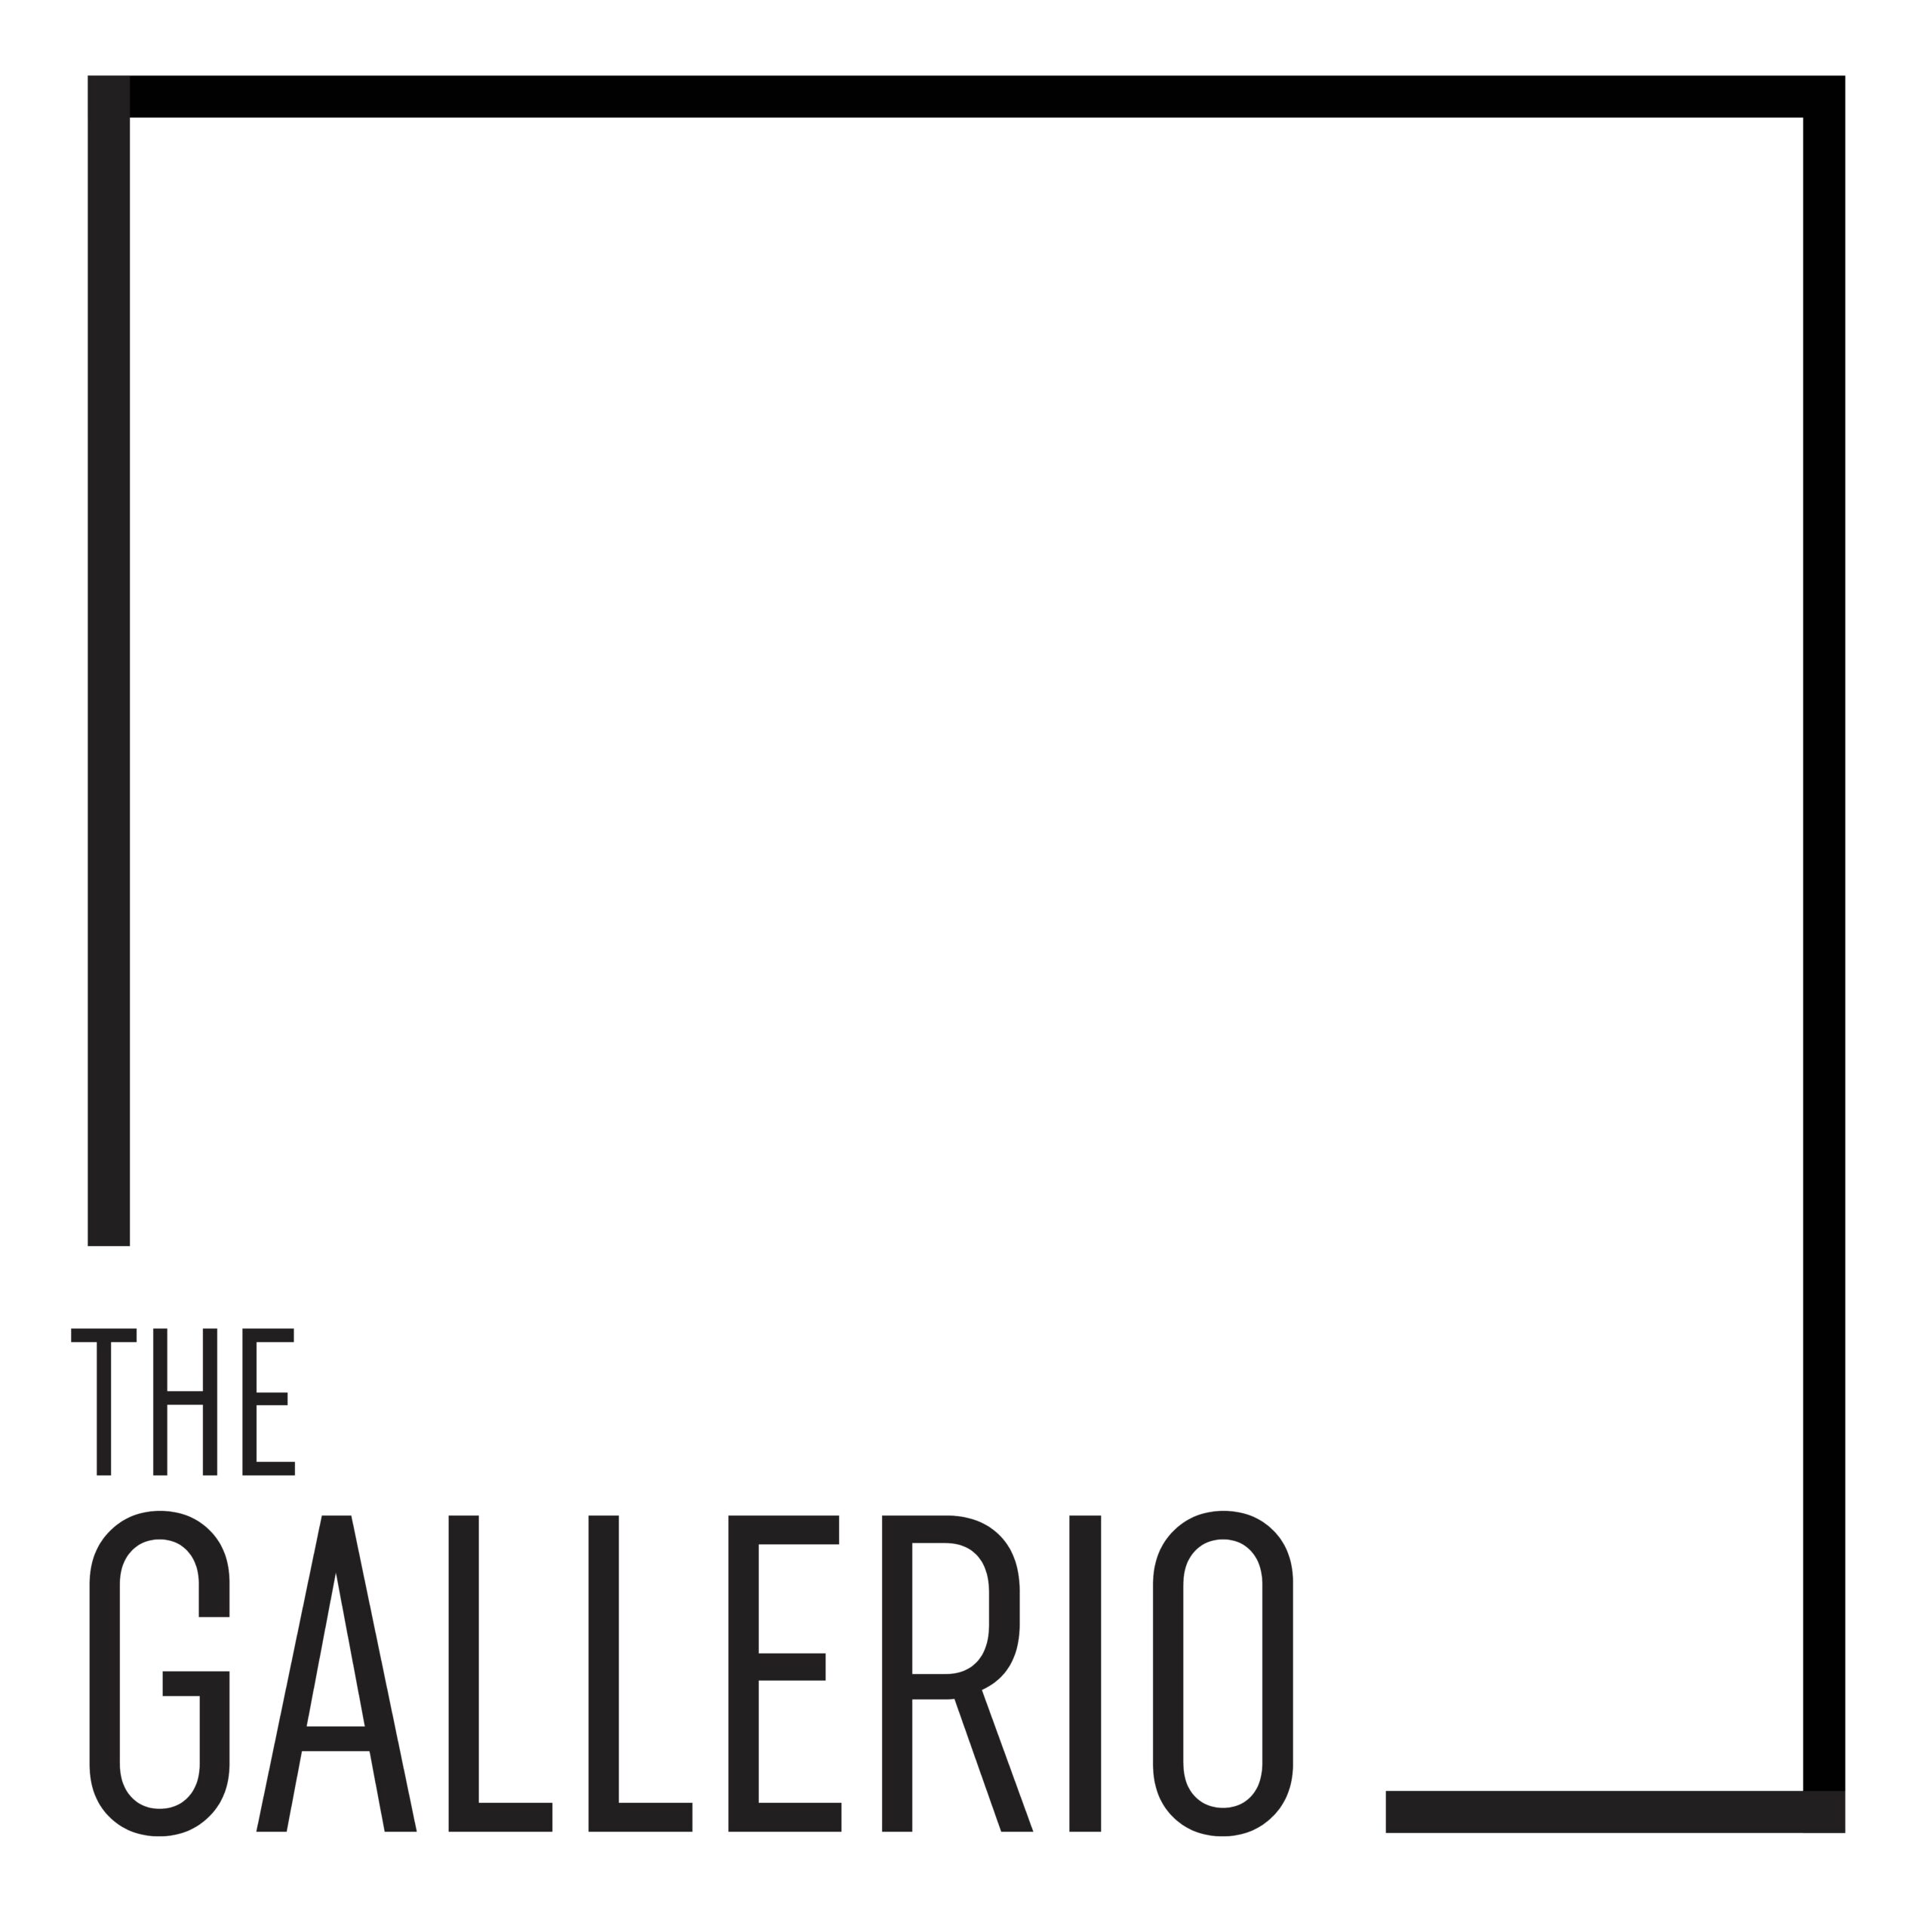 The Gallerio